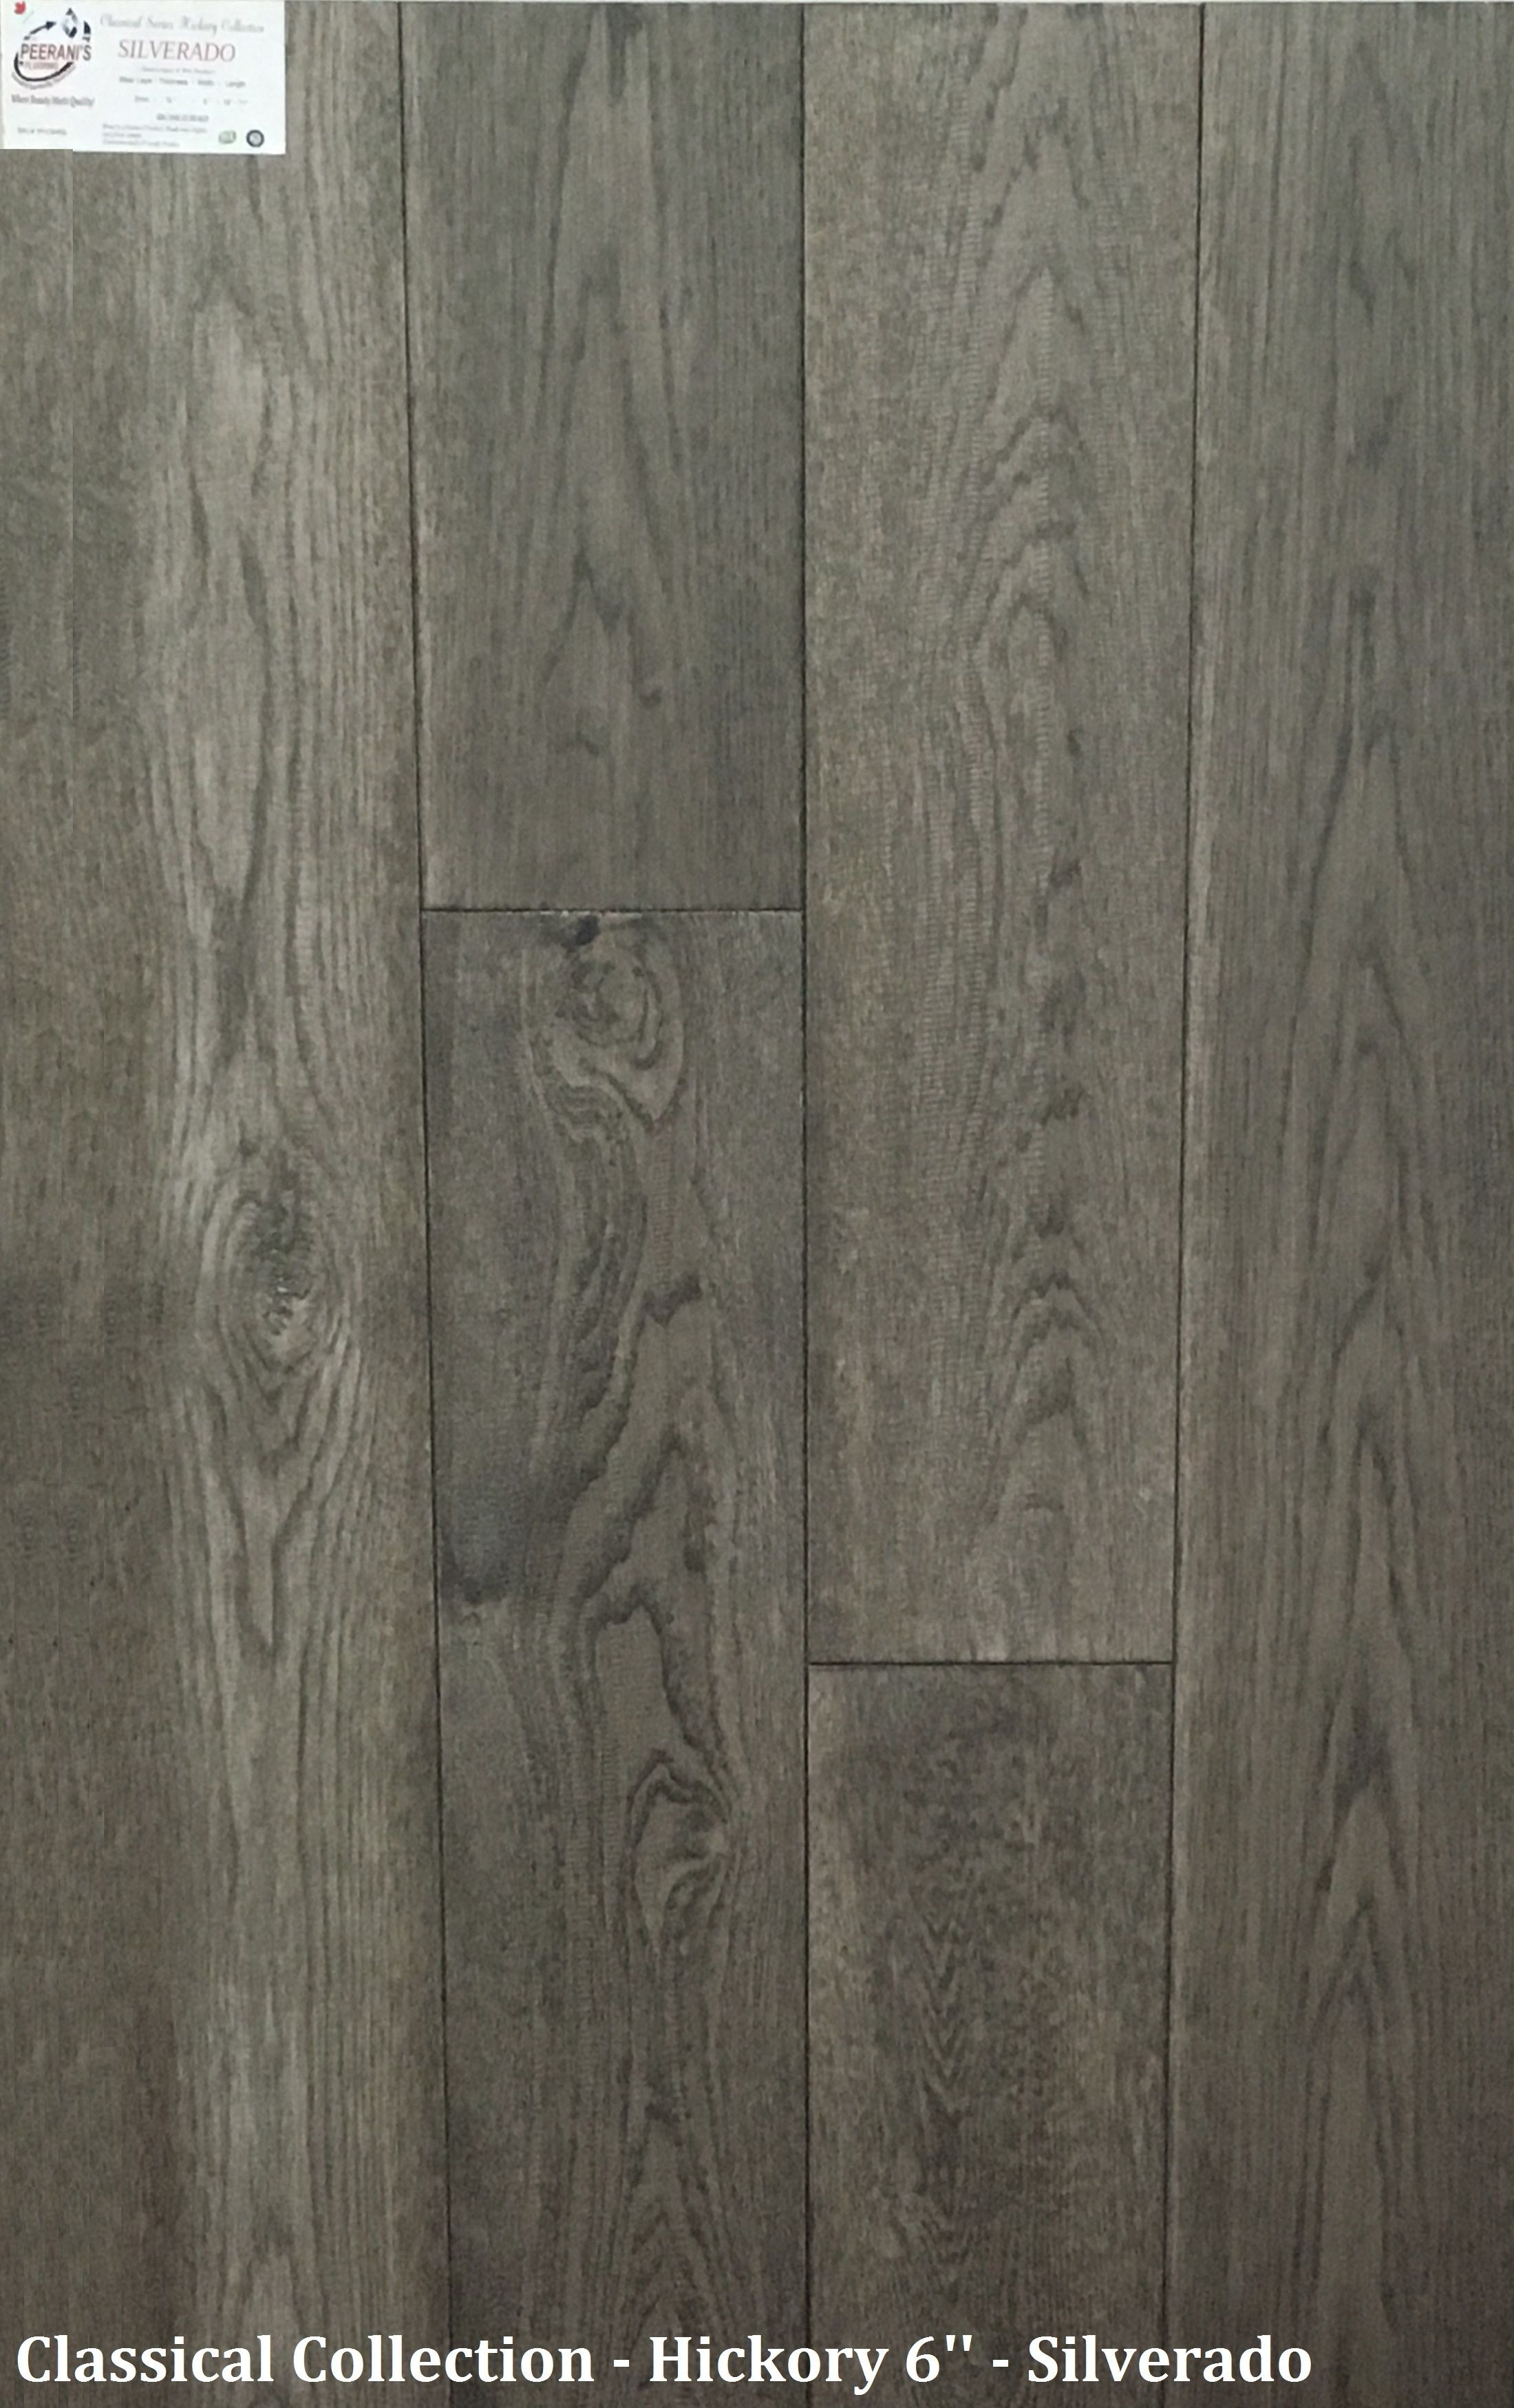 28 Elegant 6 Engineered Hardwood Flooring 2023 free download 6 engineered hardwood flooring of pin by peeranis flooring on peeranis classical series engineered inside engineered hardwood engineering technology